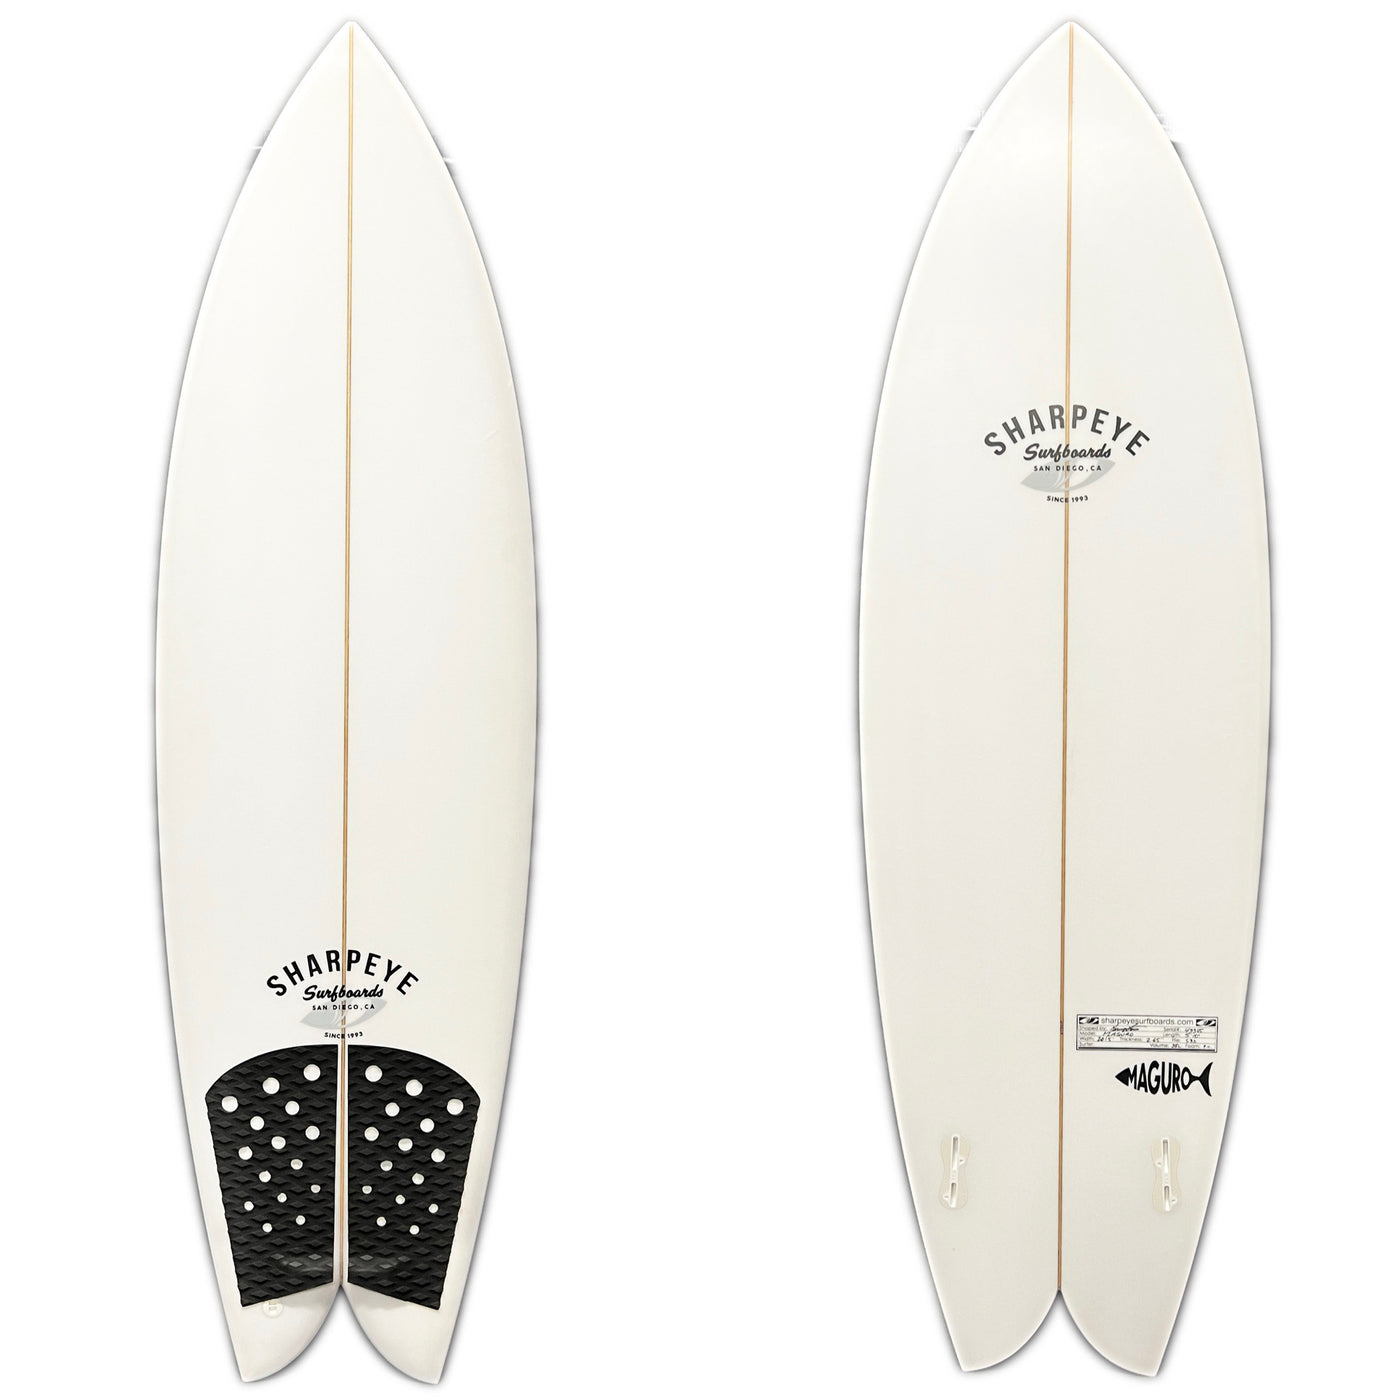 Sharp Eye 5'10" Maguro Twin Fin Surfboard